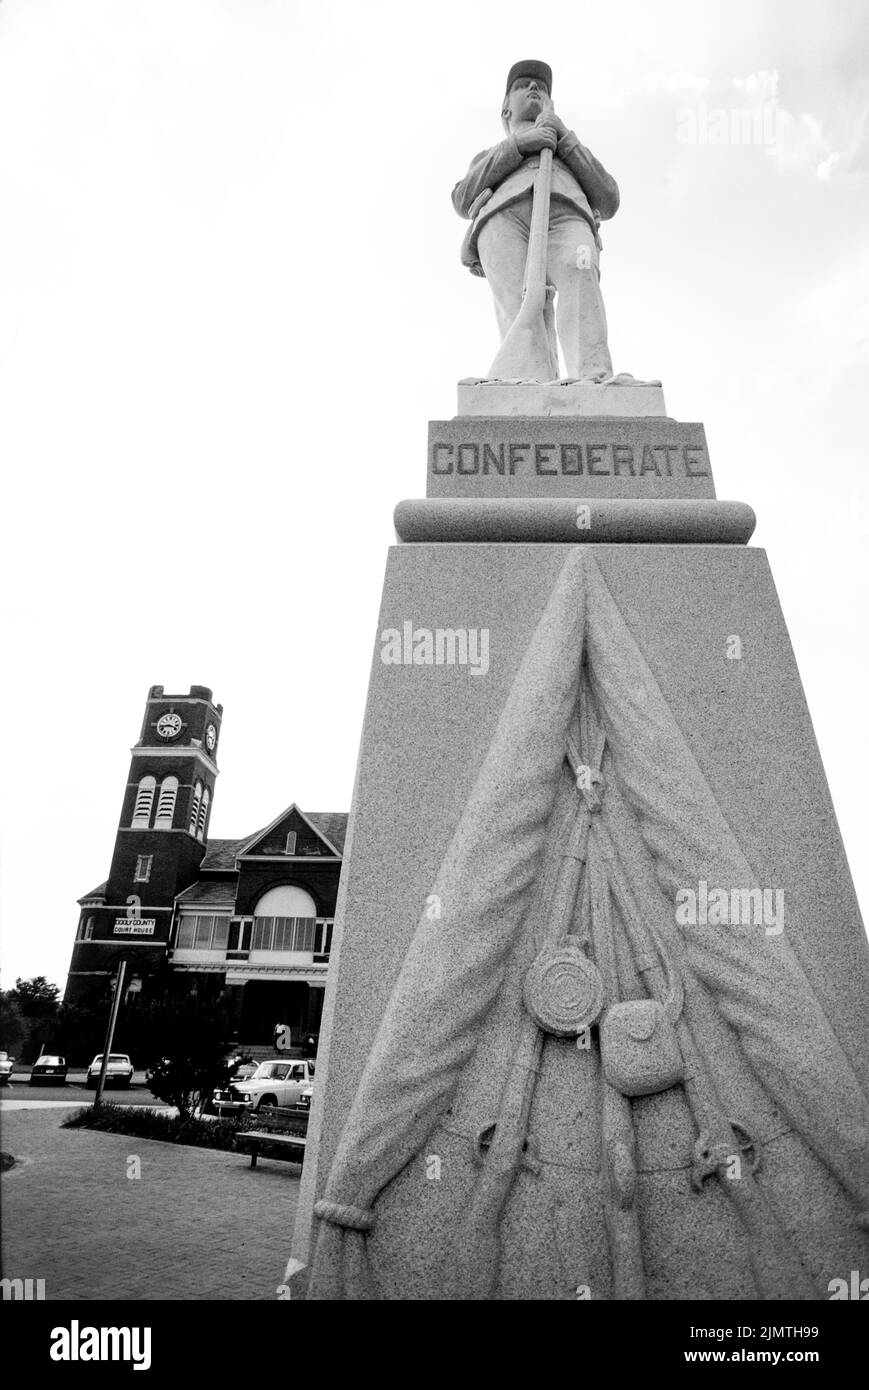 Le monument confédéré se trouve en face du palais de justice du comté de Dooly à Vienne, en Géorgie. La ressemblance d'un soldat de l'Armée confédérée est . Banque D'Images